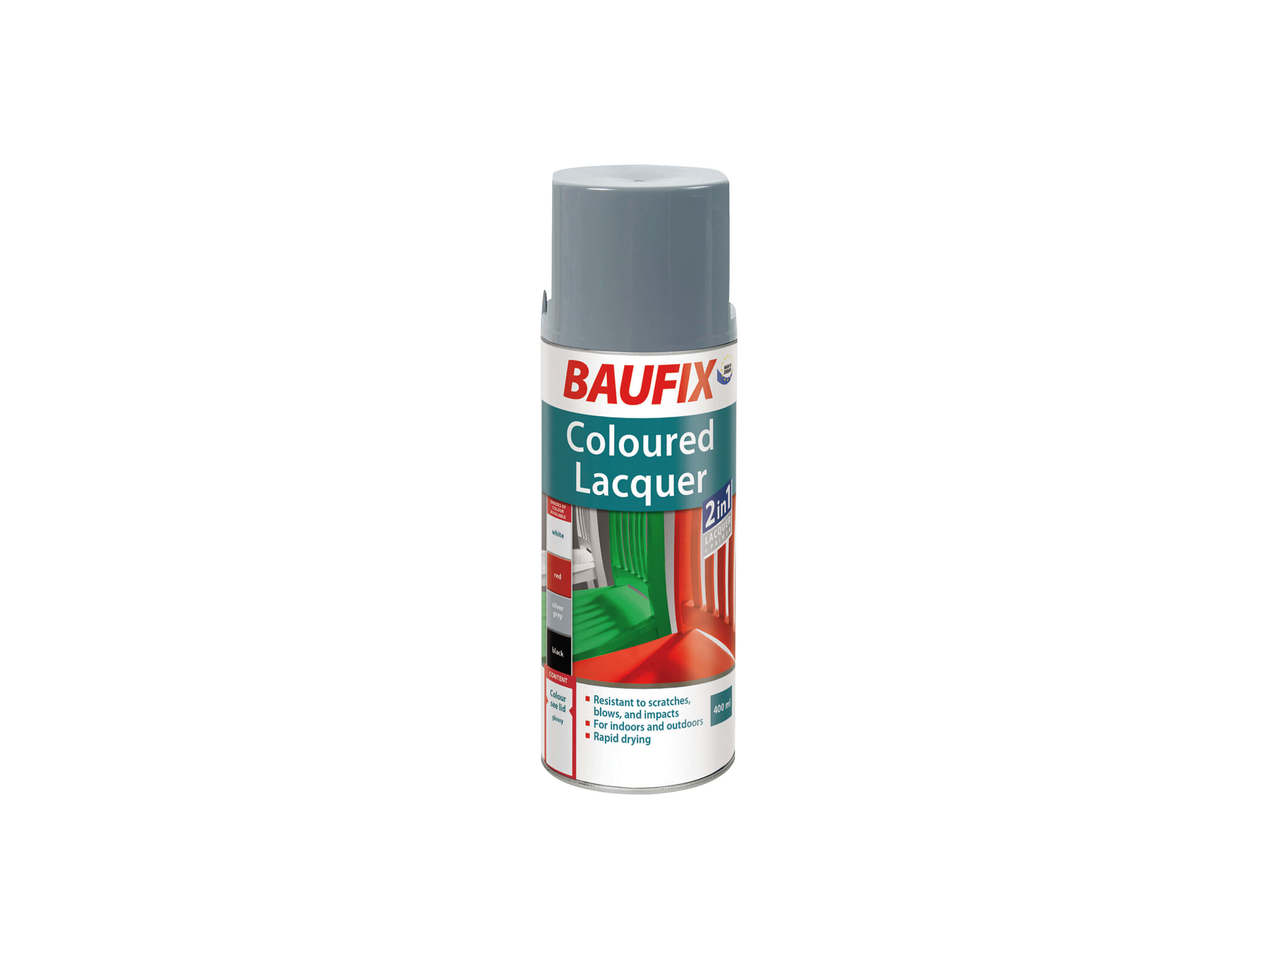 BAUFIX(R) Spraymaling